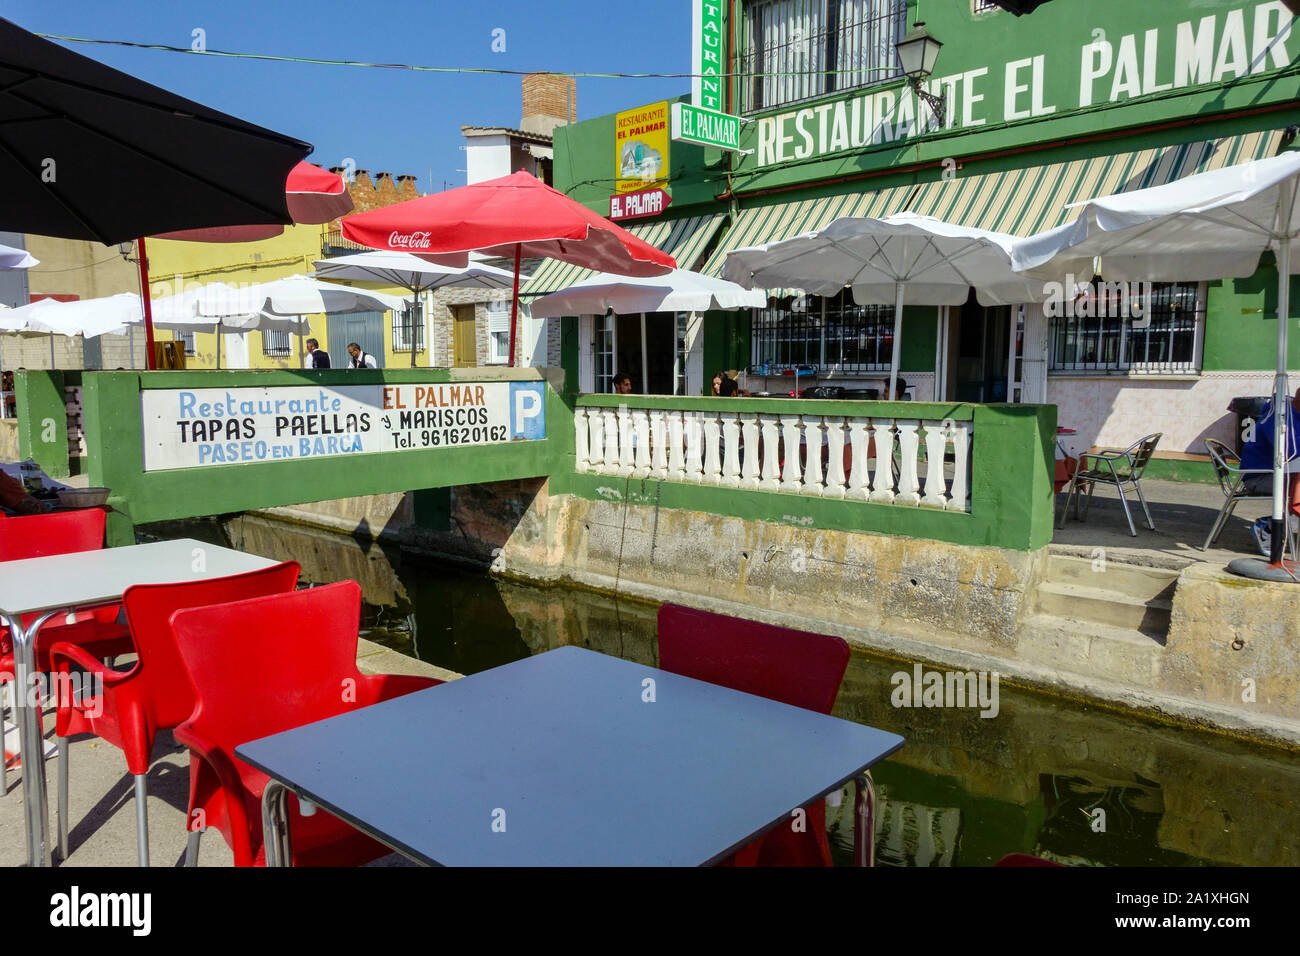 Spagna Valencia, le persone vengono a mangiare in molti ristoranti e tapas bar a canale di acqua nel meraviglioso piccolo villaggio di El Palmar, Albufera Parco naturale Foto Stock